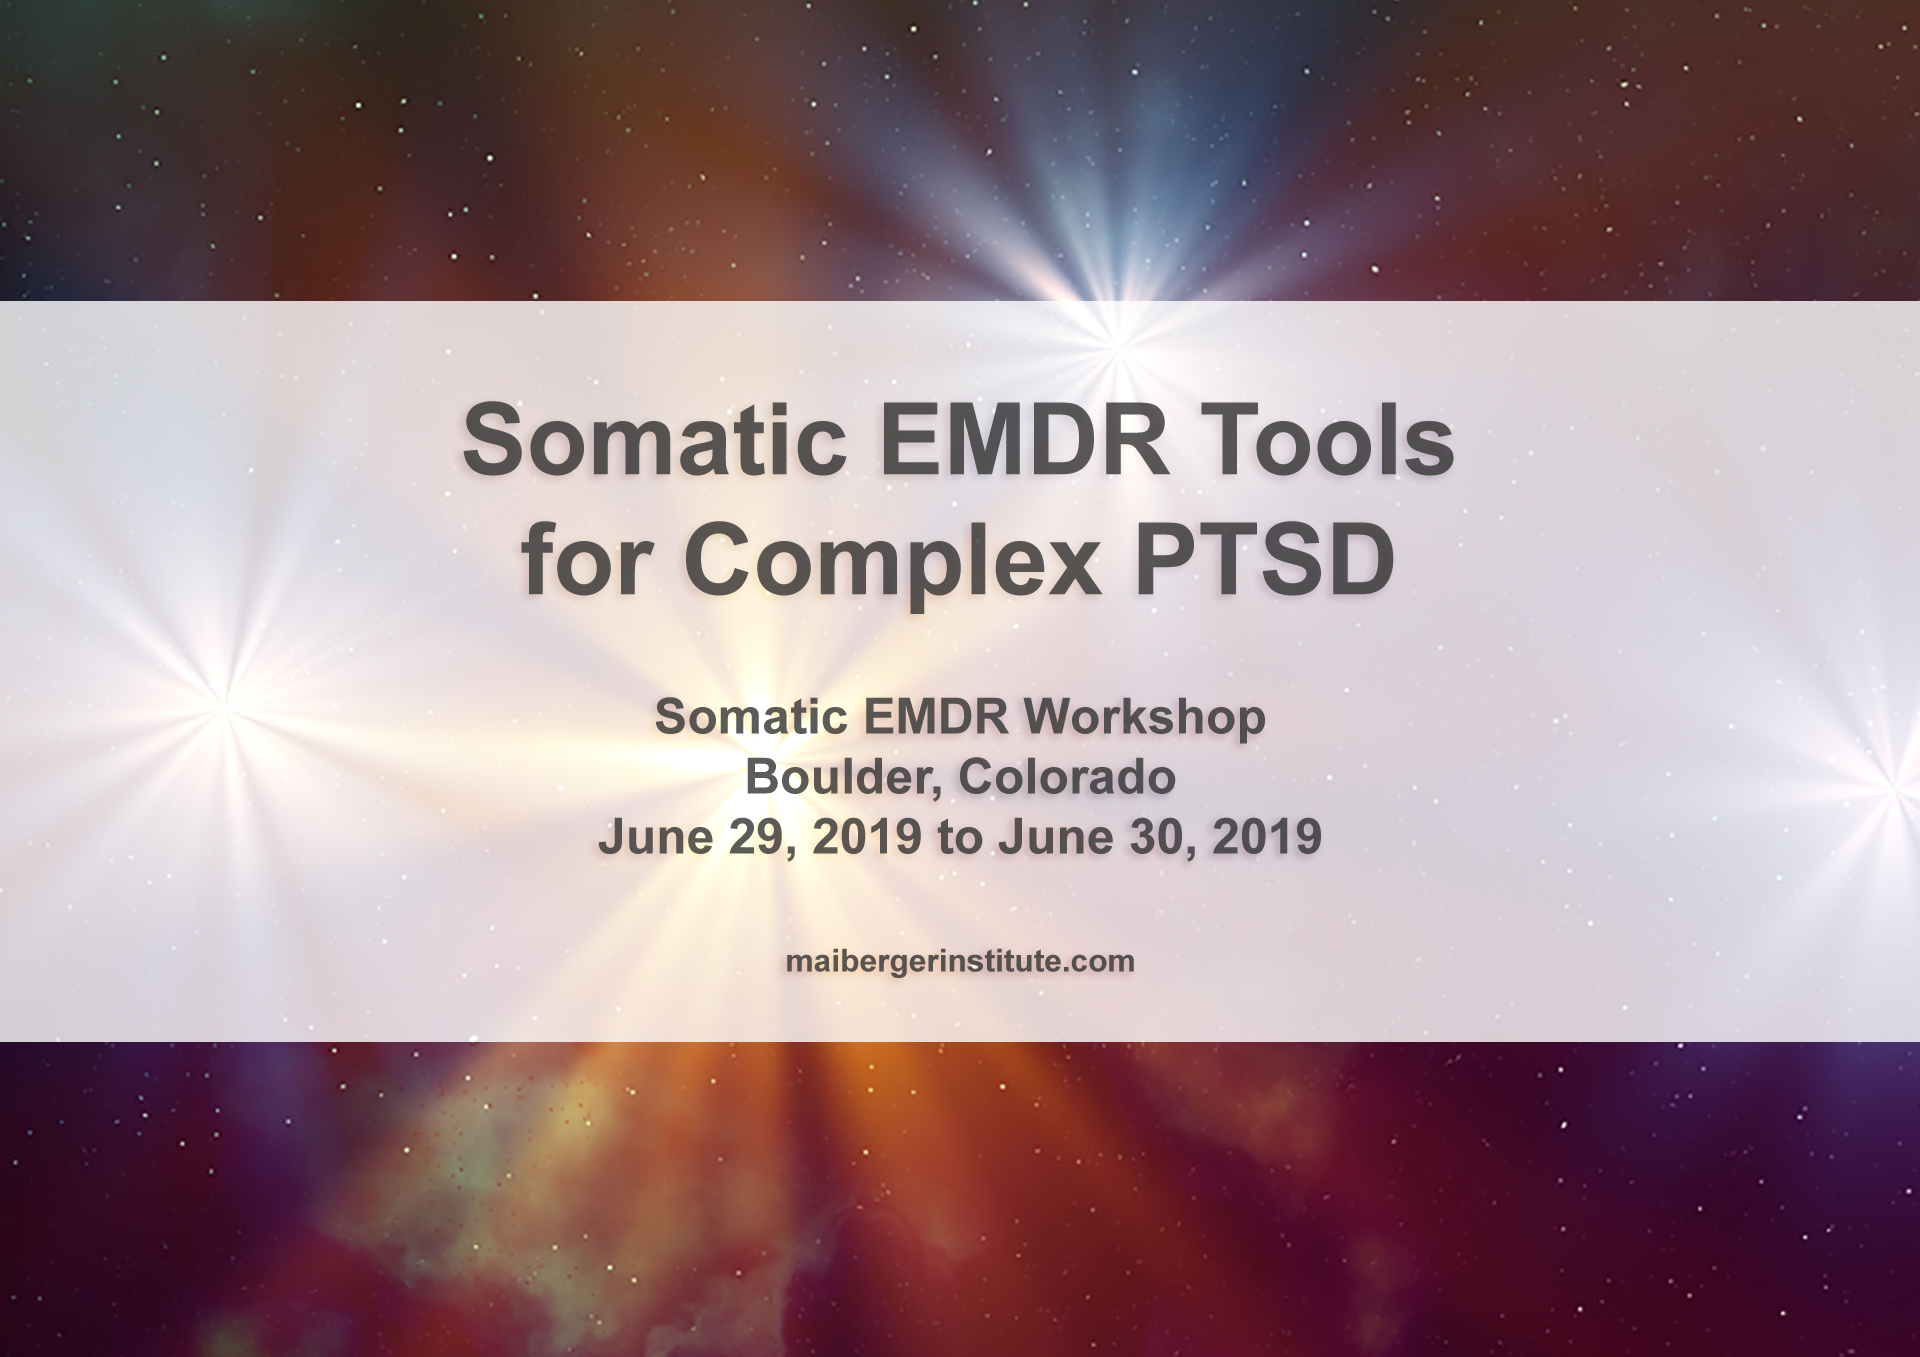 Somatic EMDR Tools for Complex PTSD - Somatic EMDR Workshop in Boulder Colorado - June 29-30 2019